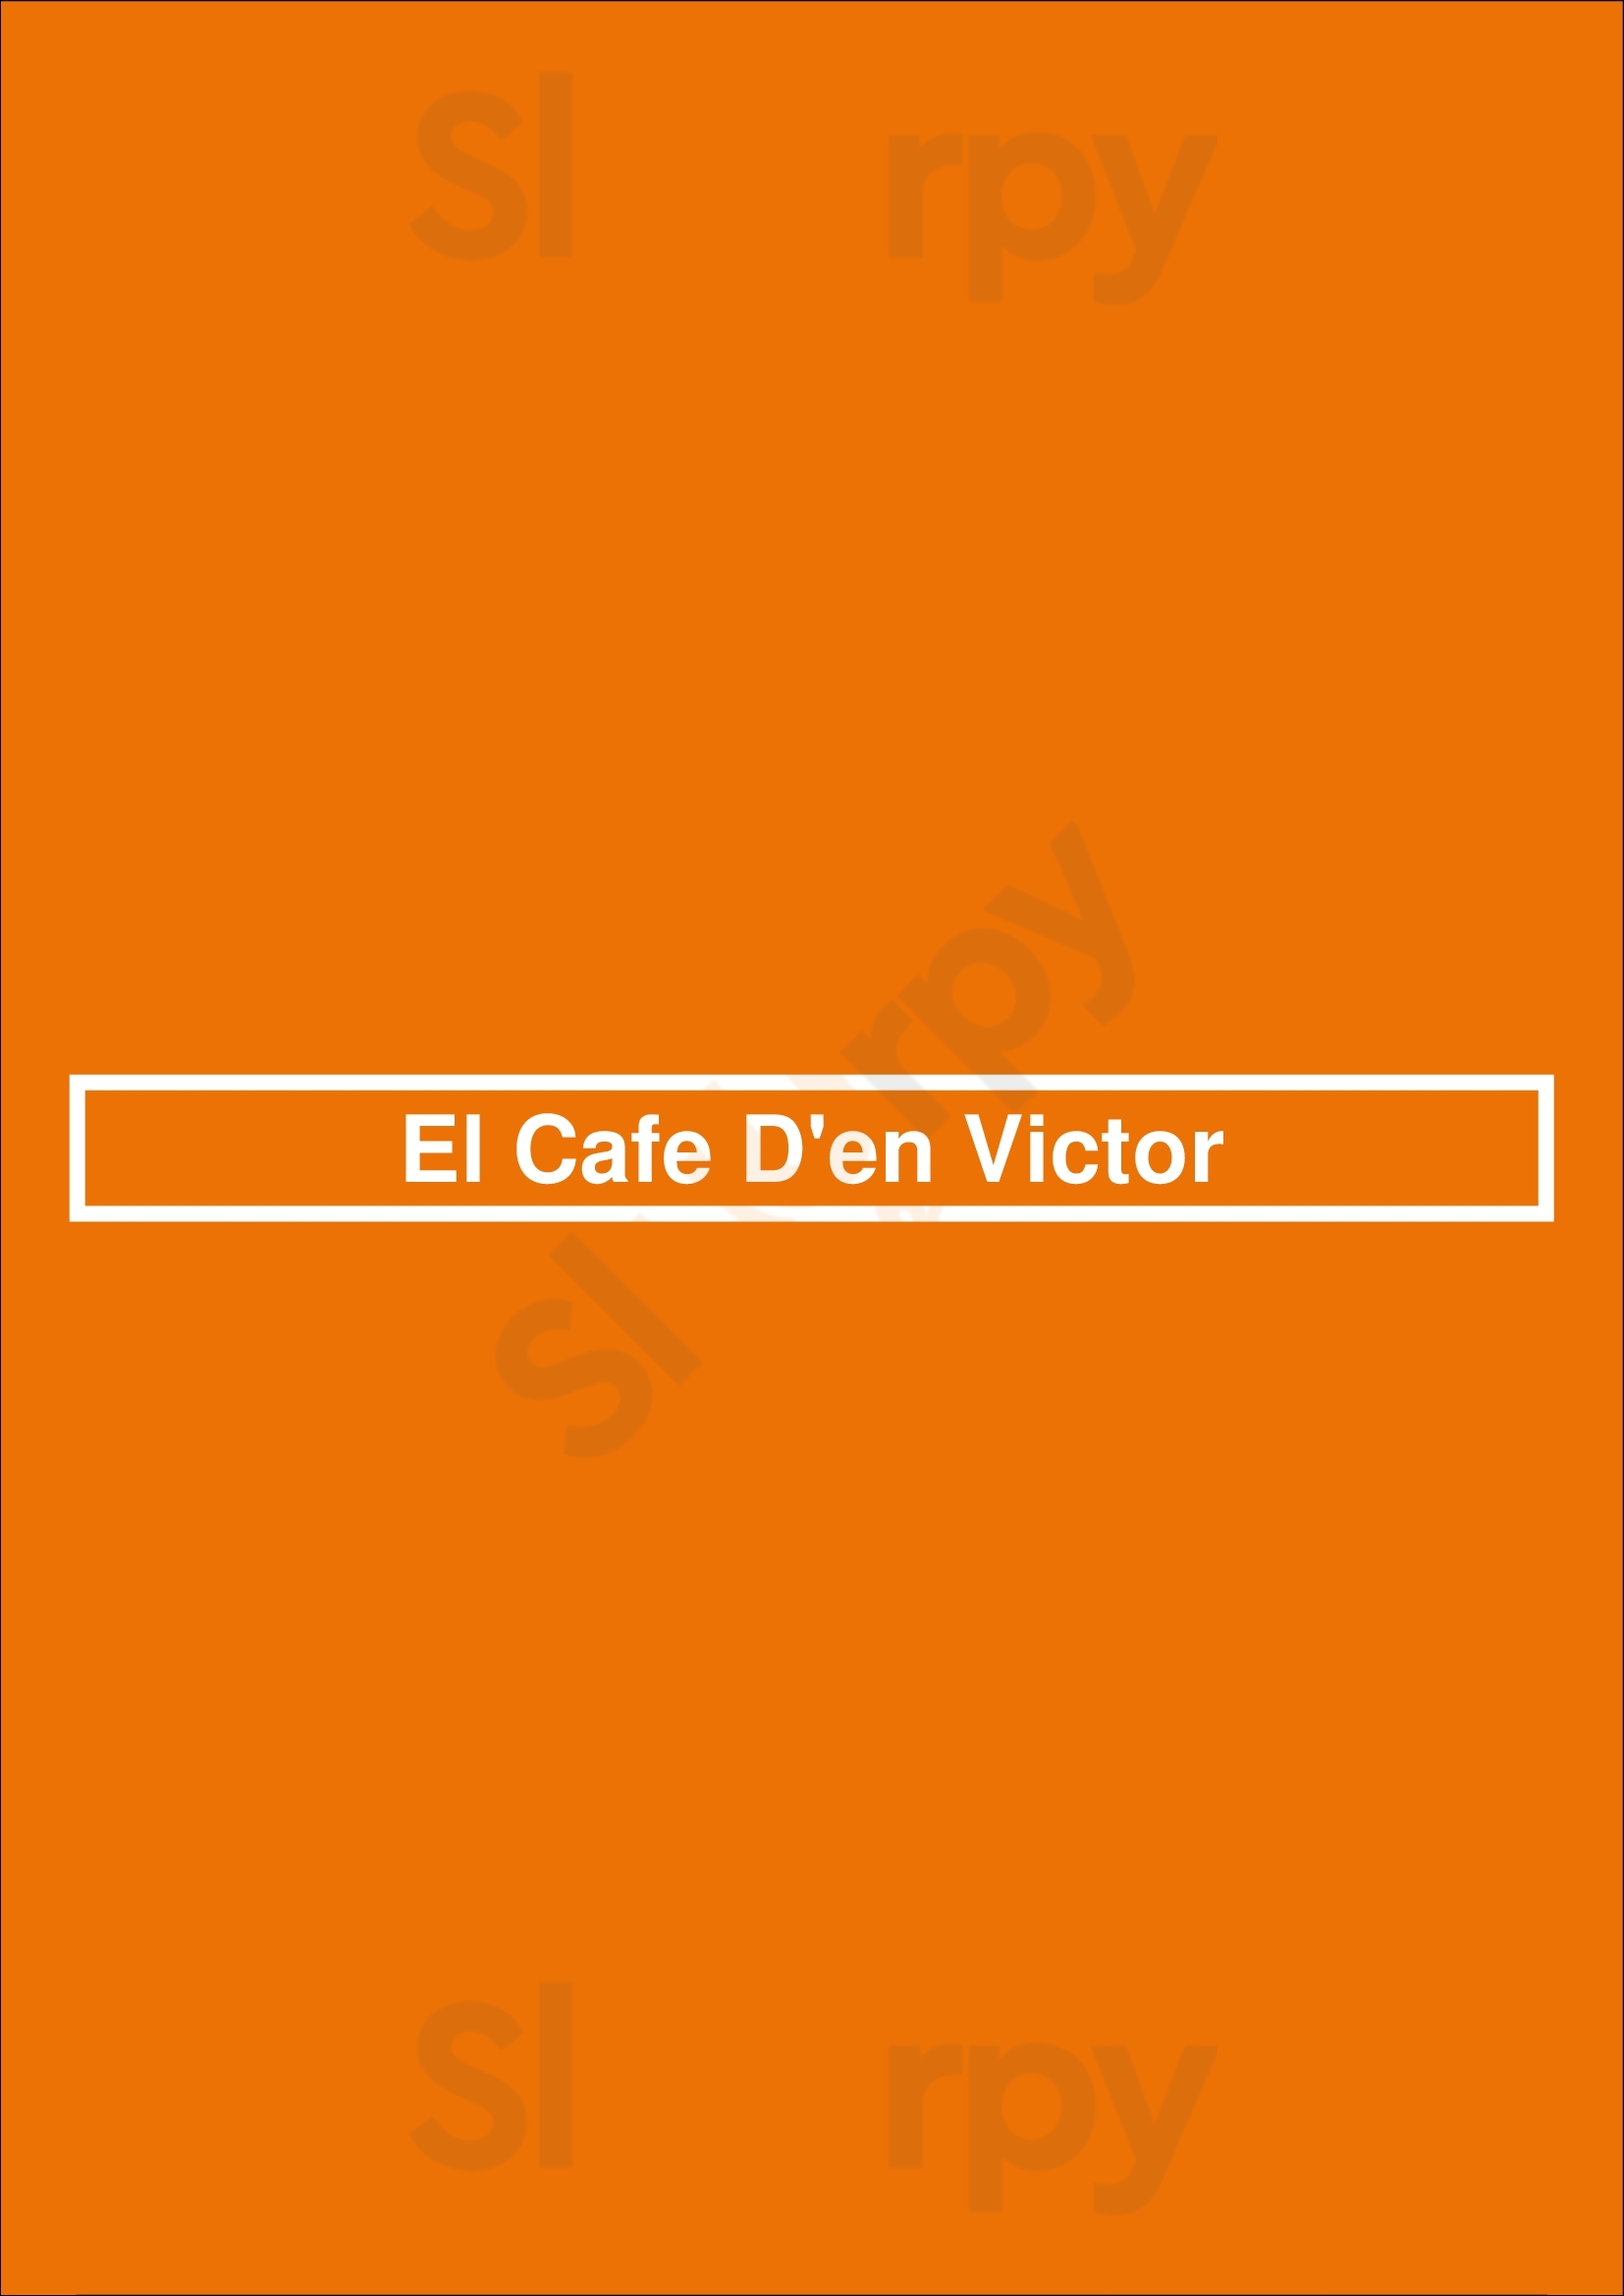 El Cafe D'en Victor Barcelona Menu - 1